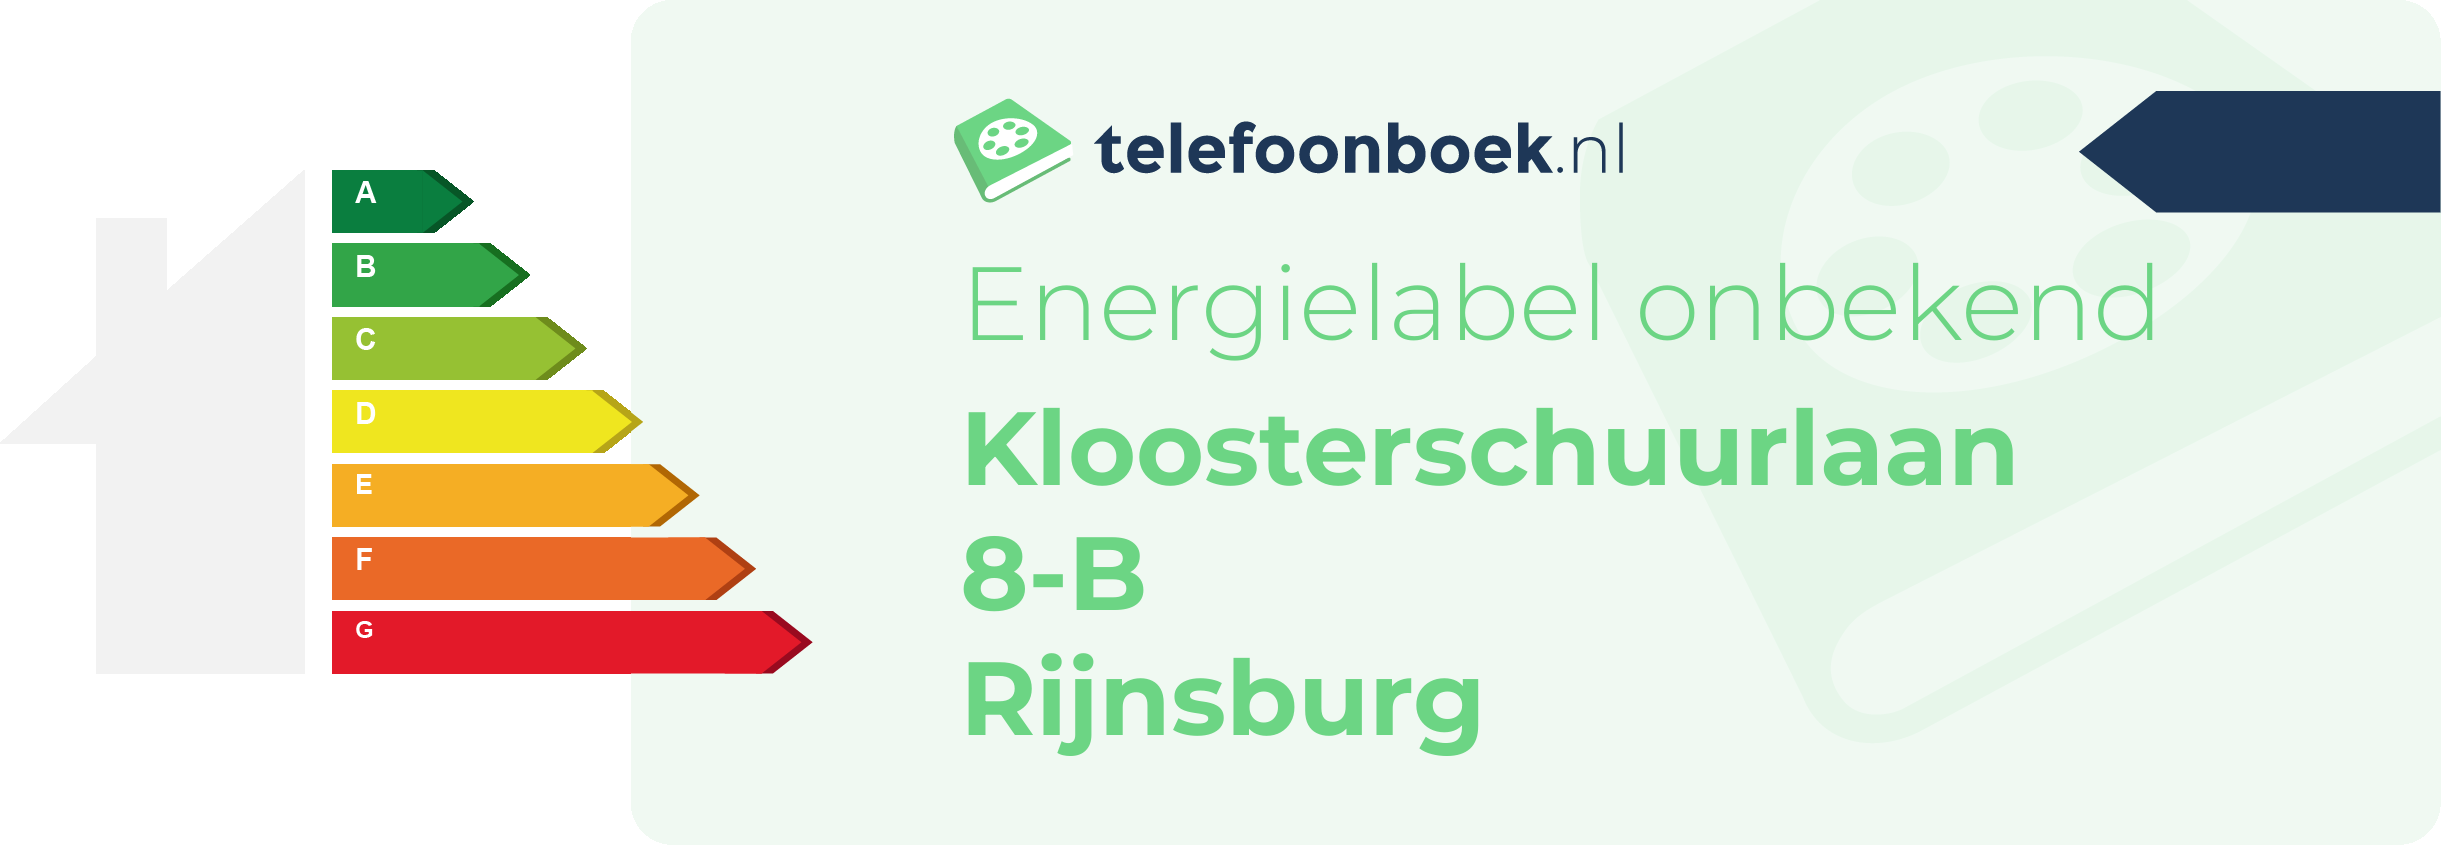 Energielabel Kloosterschuurlaan 8-B Rijnsburg